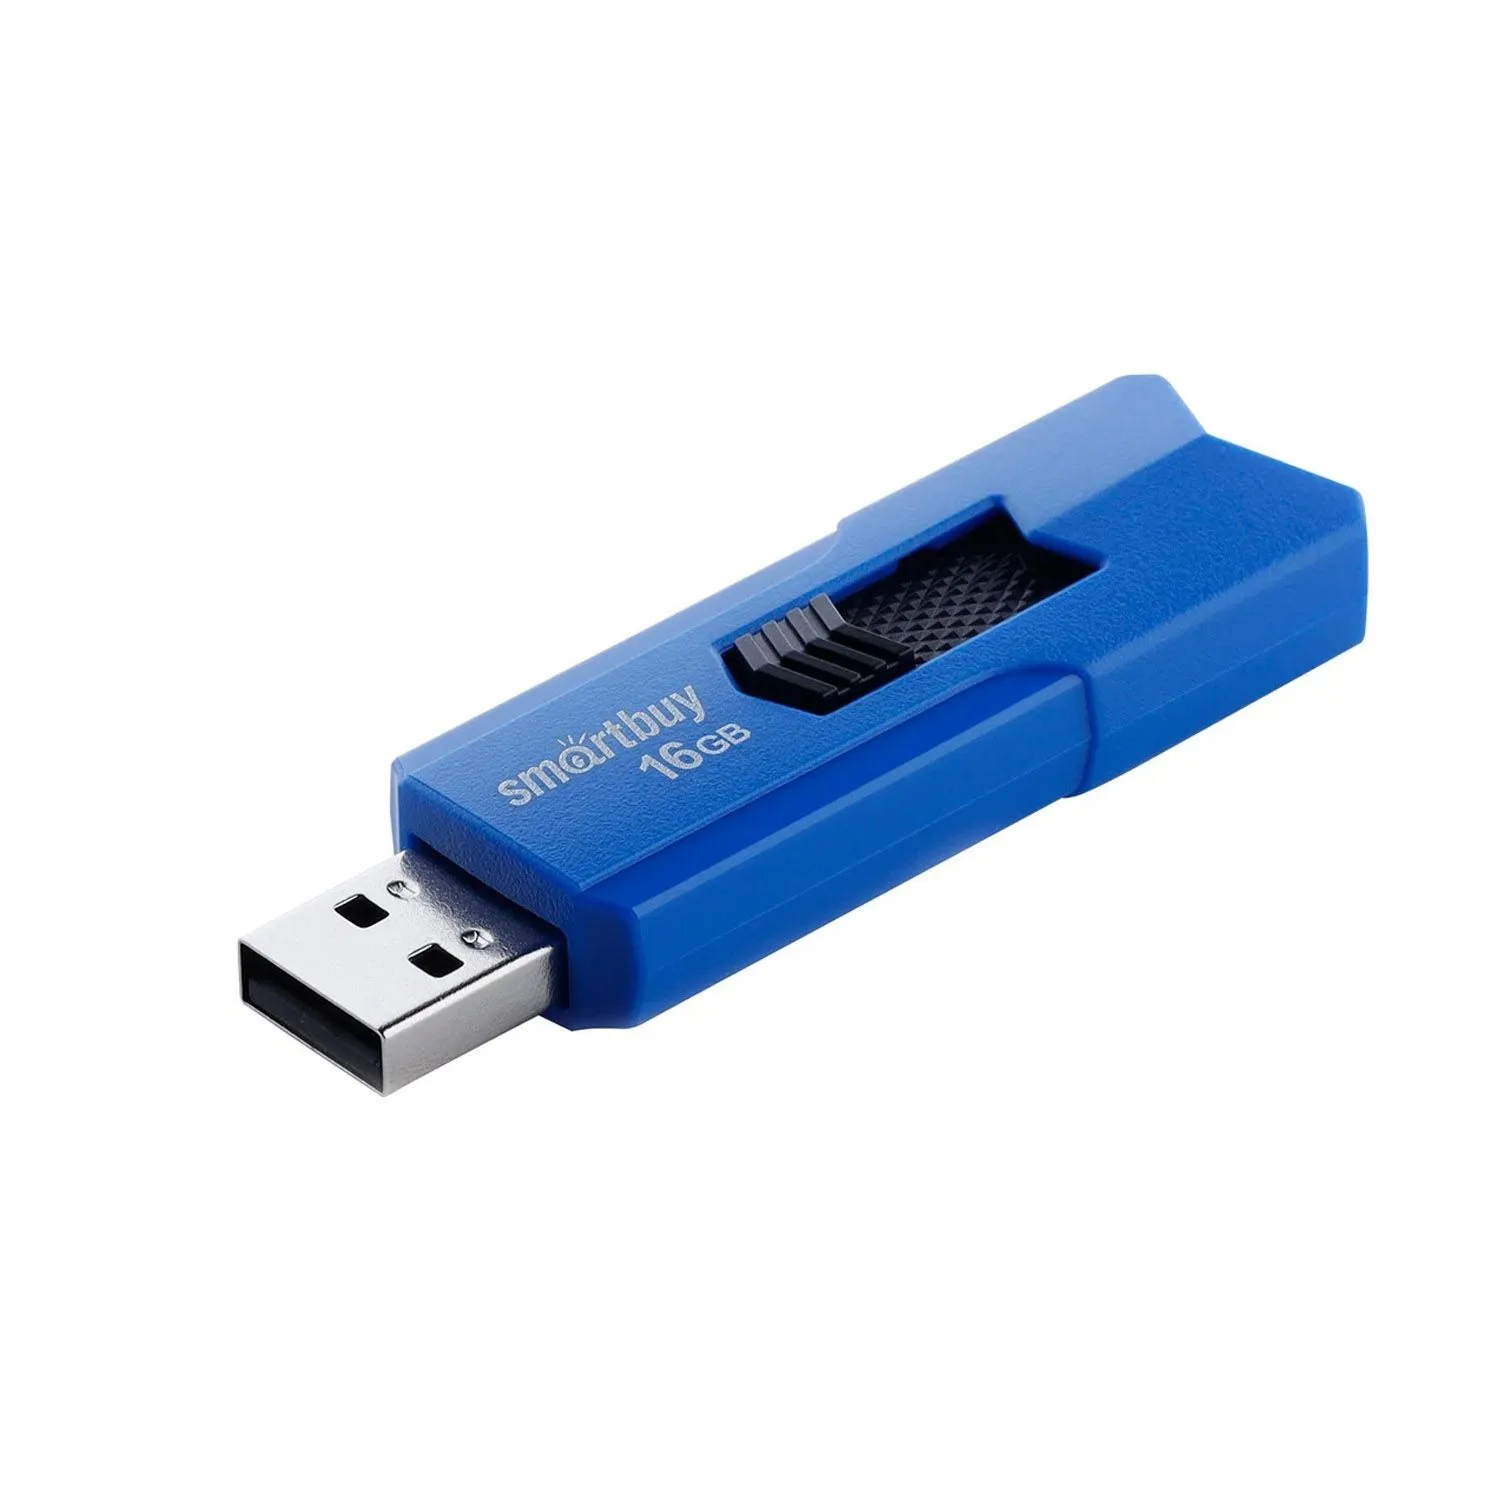 Флеш-накопитель USB 16GB Smart Buy Stream (синий)